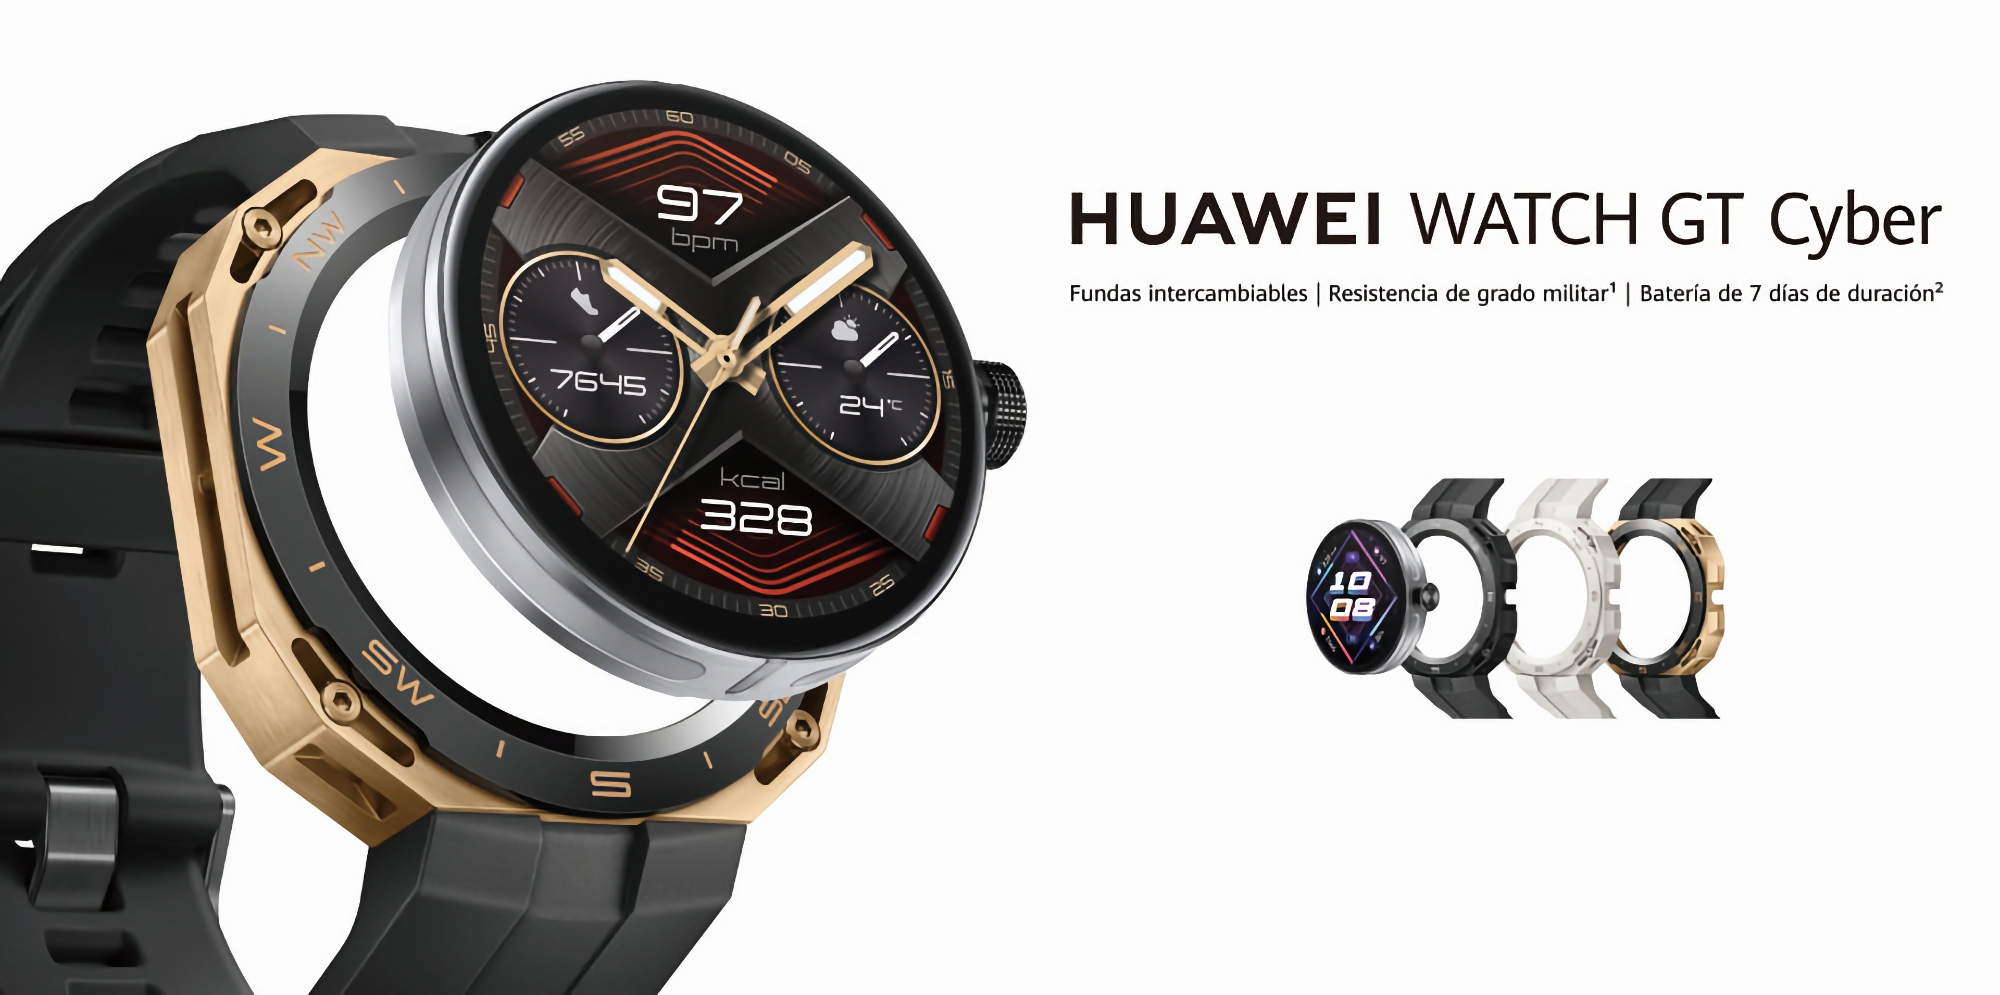 La Huawei Watch GT Cyber, smartwatch à cadran amovible, a fait ses débuts en dehors de la Chine.